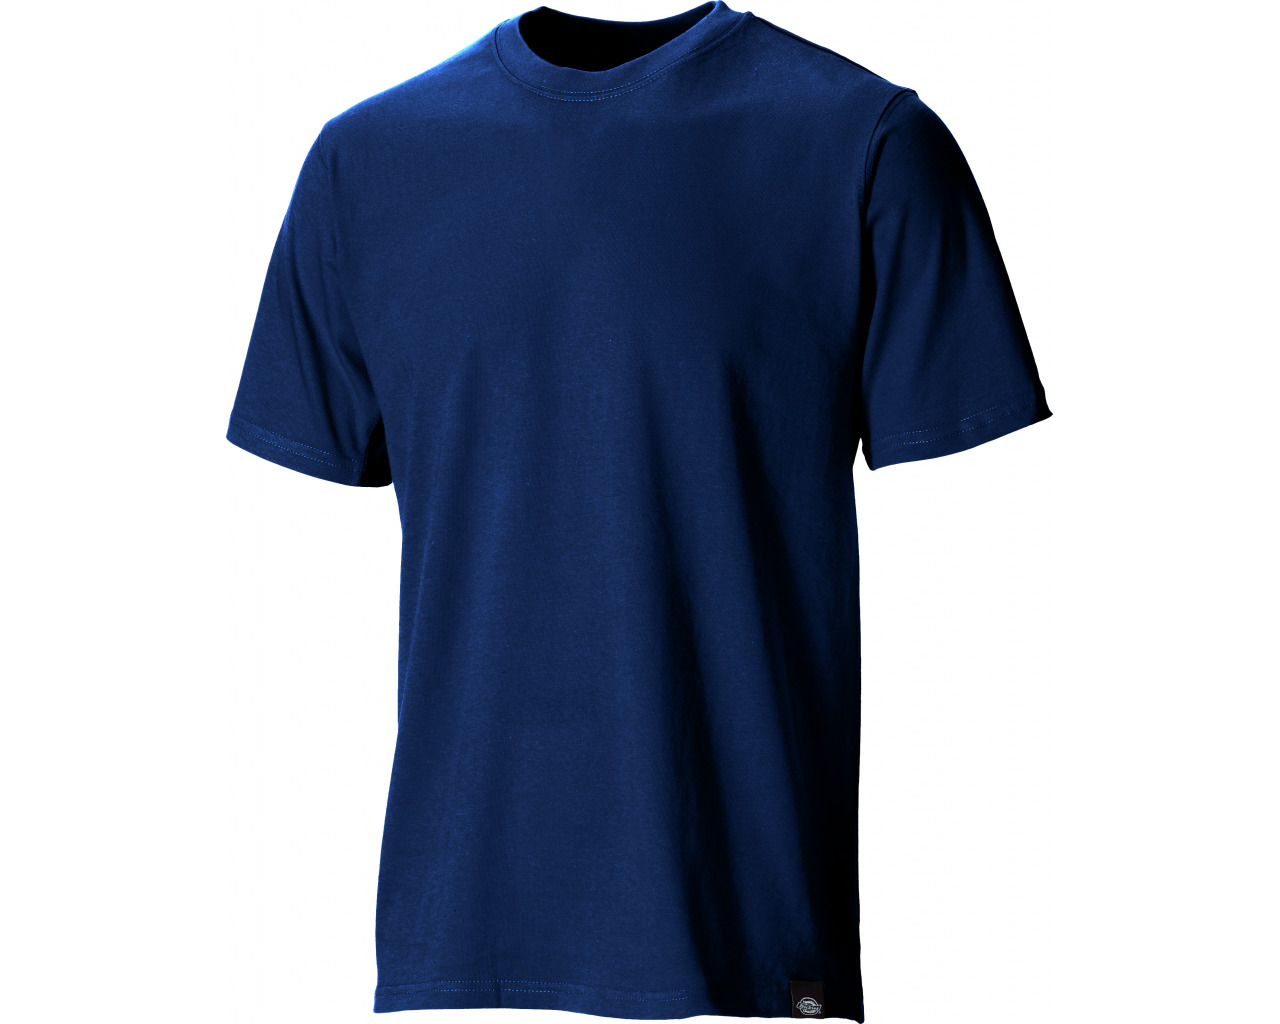 blue-t-shirt-template